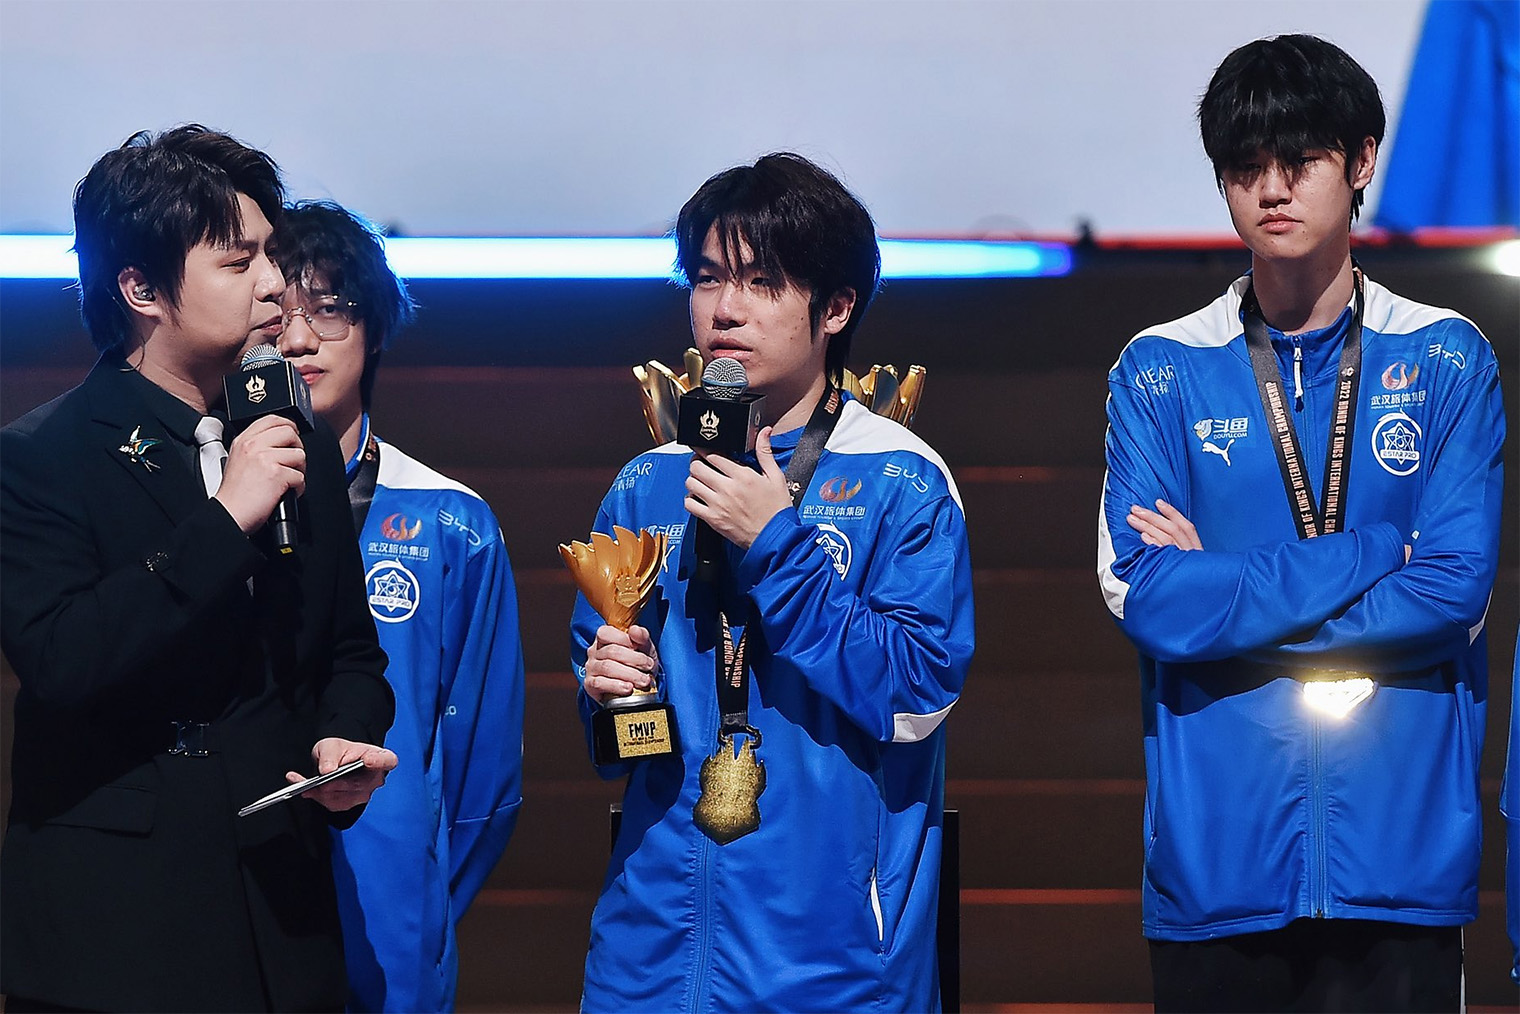 Луо Сиюань с наградой лучшему игроку финала после победы на чемпионате мира. Источник: HoK Global Esports